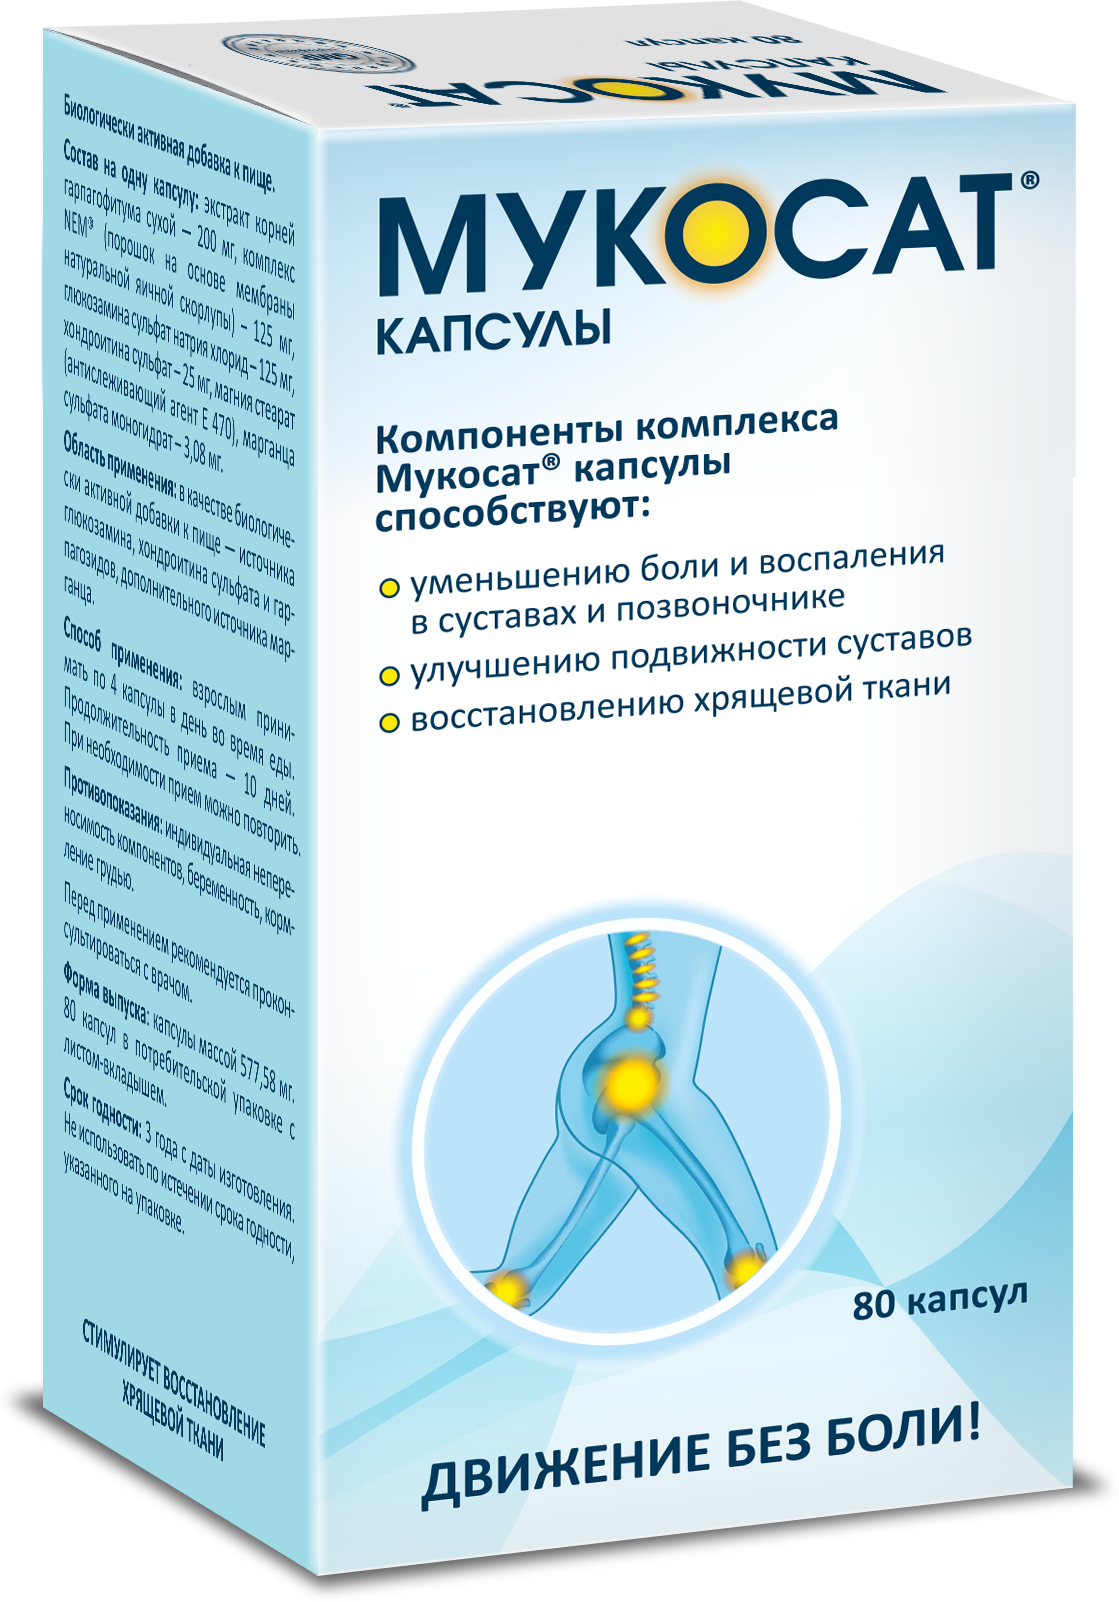 Капсулы Мукосат® — средство нового поколения для суставов и позвоночника